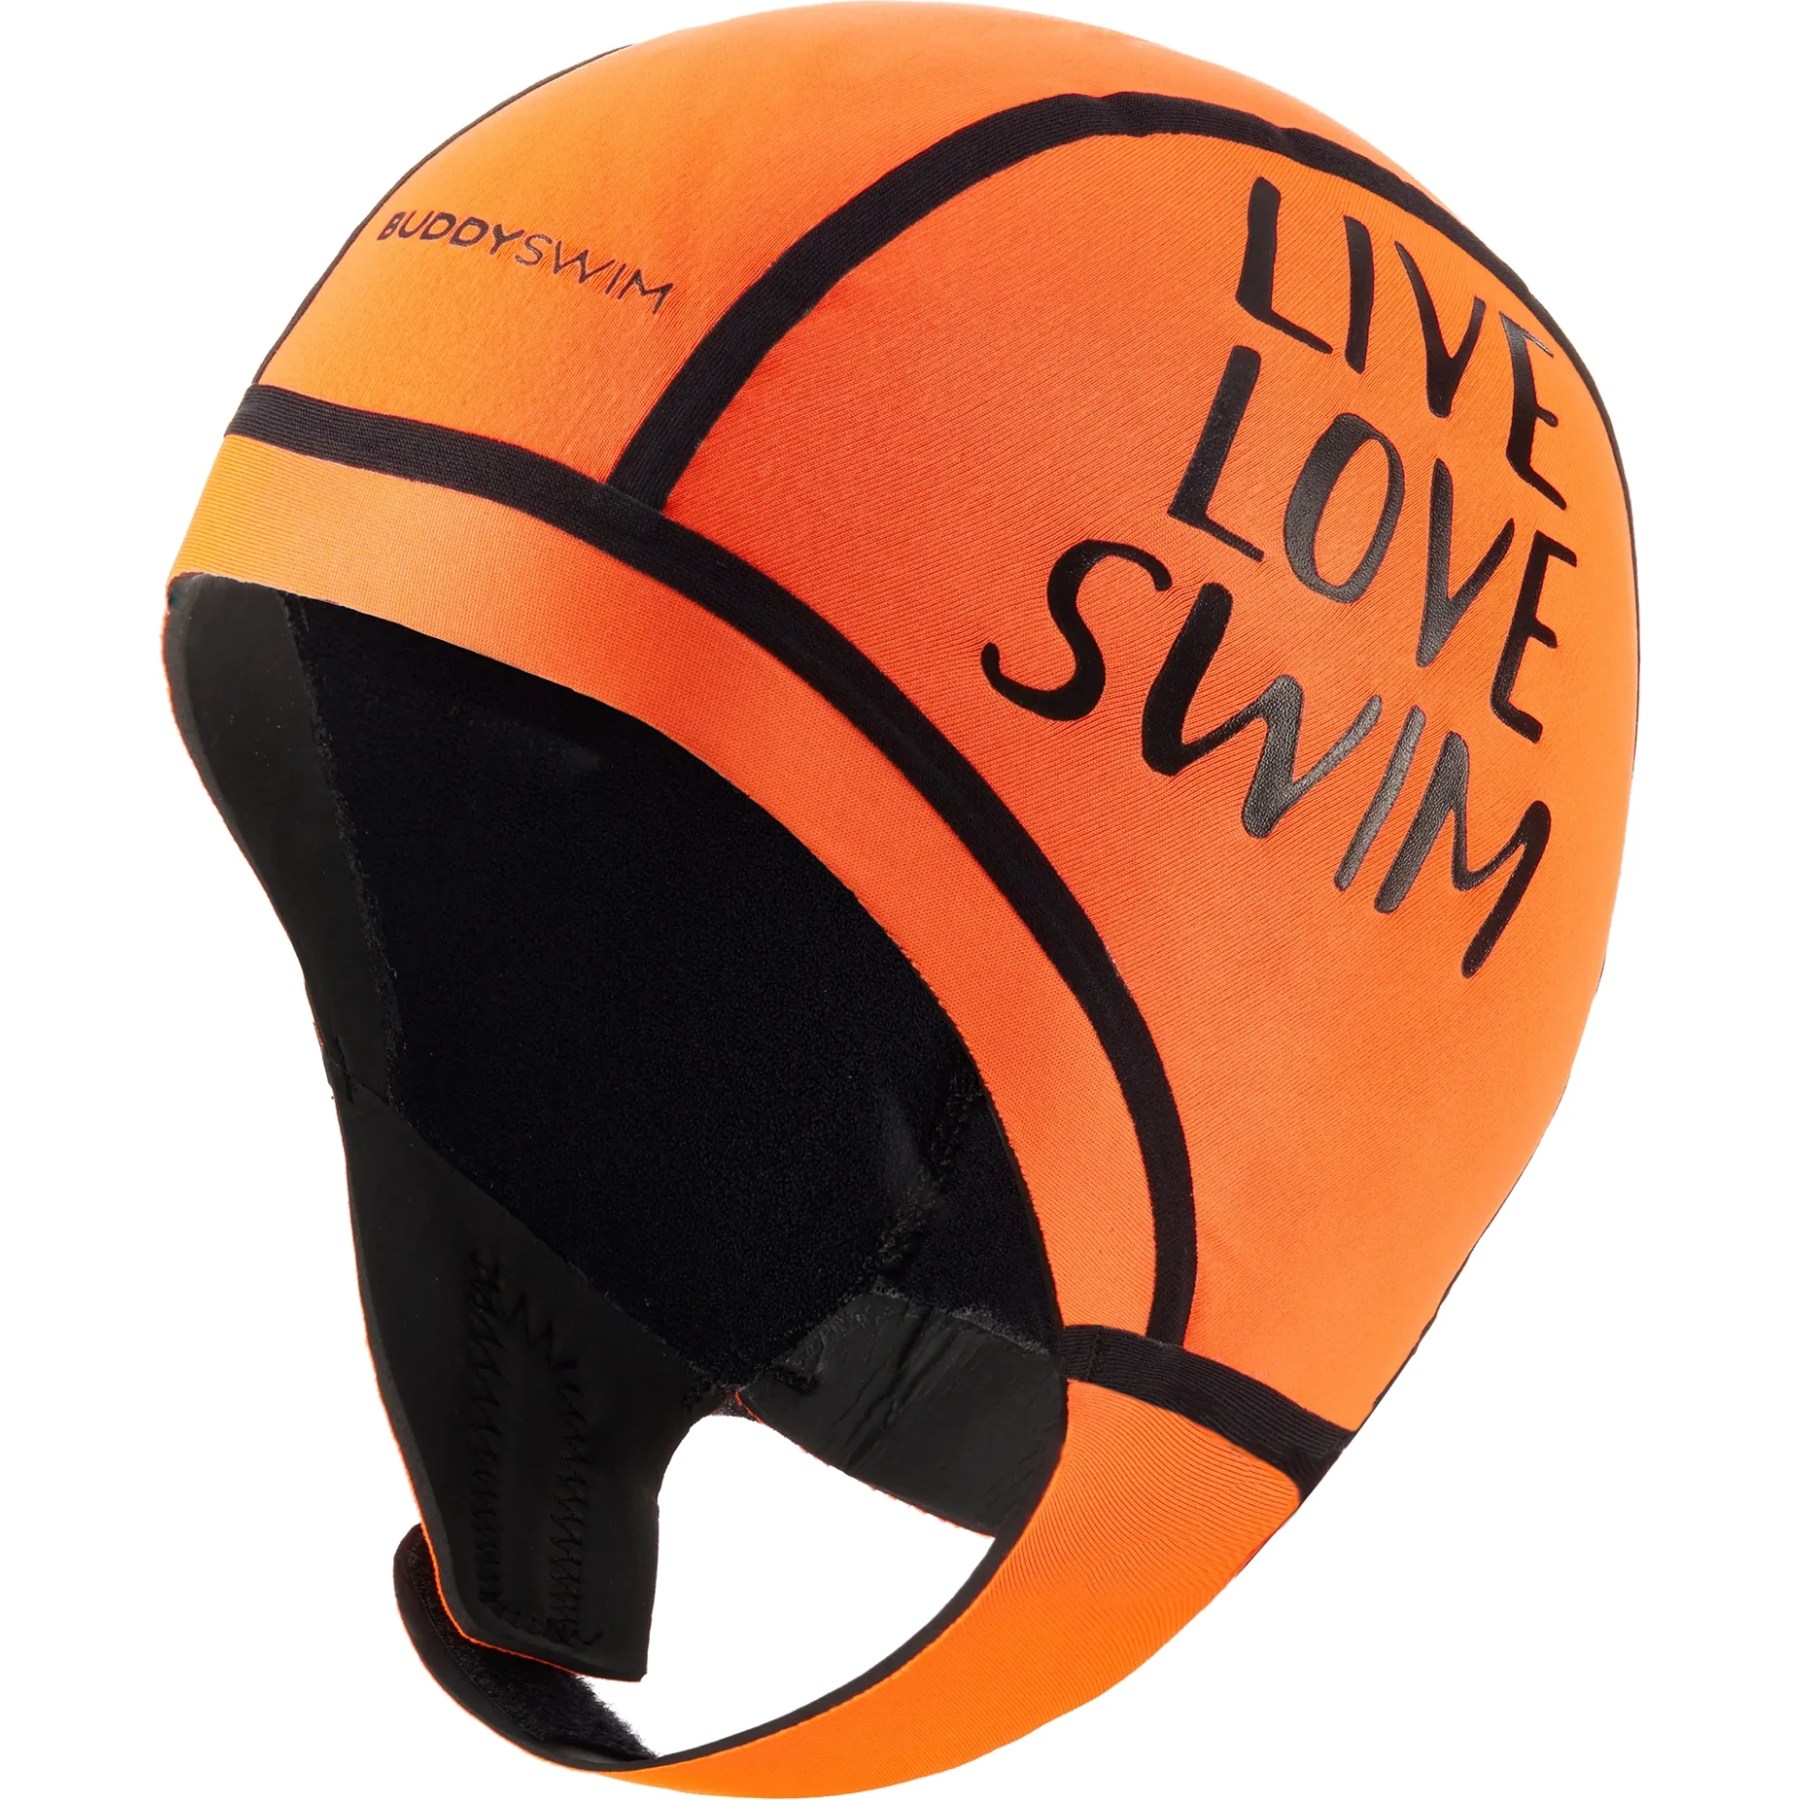 Produktbild von Buddyswim LIVE LOVE SWIM Neopren Schwimmkappe - orange